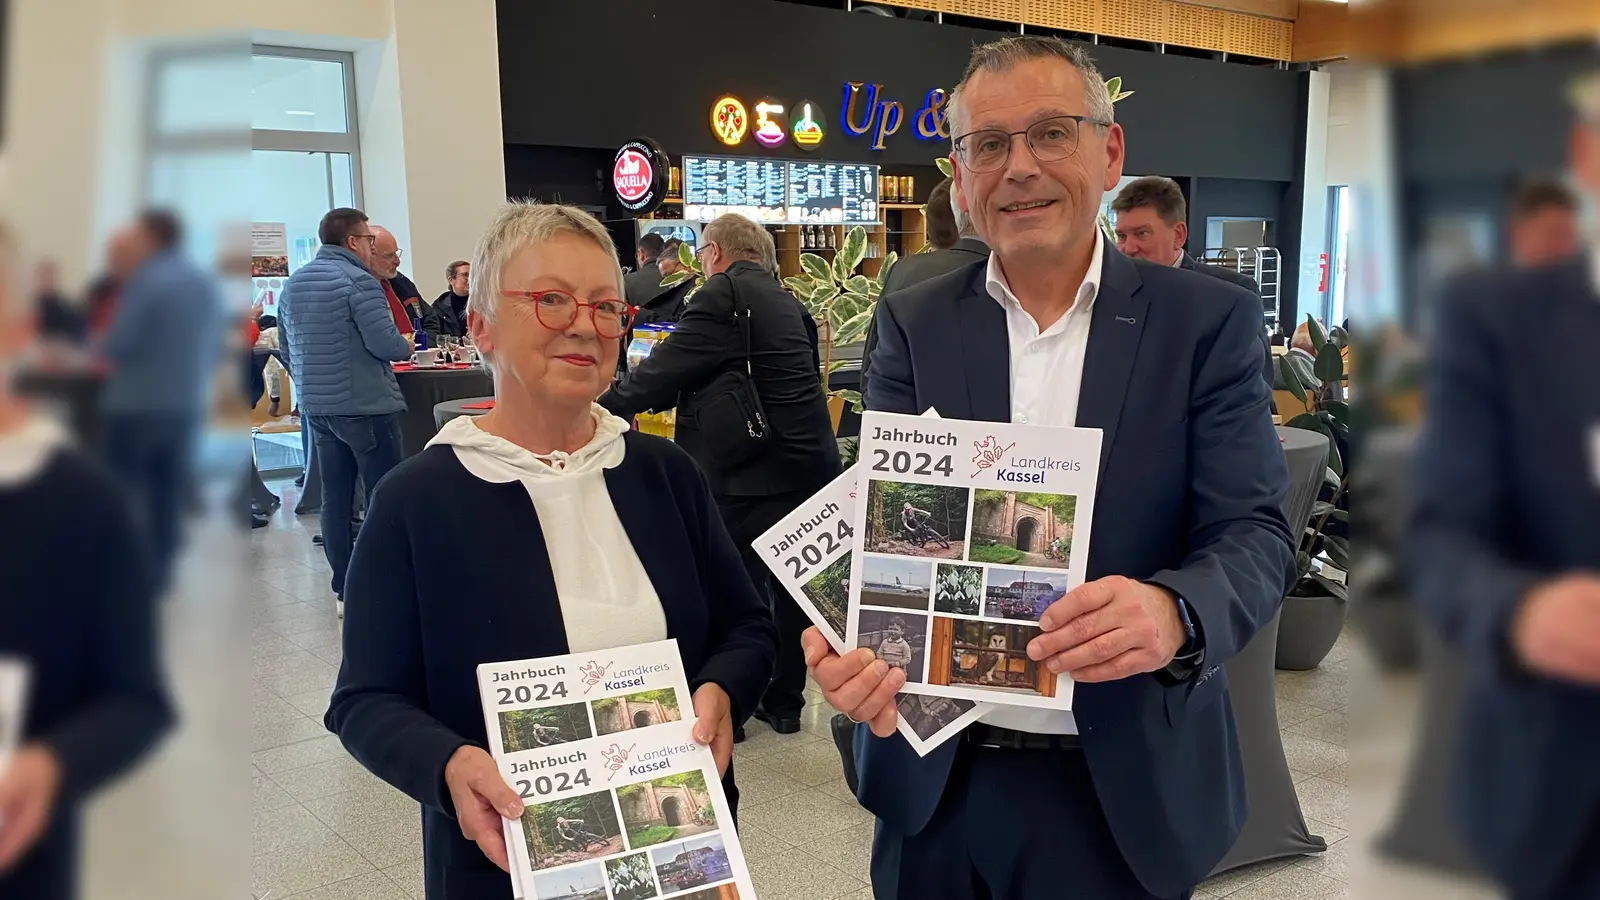 Landrat Andreas Siebert und Anne Riedel, Leiterin des Redaktionsteams, stellten das Jahrbuch 2024 vor.  (Foto: Landkreis Kassel)